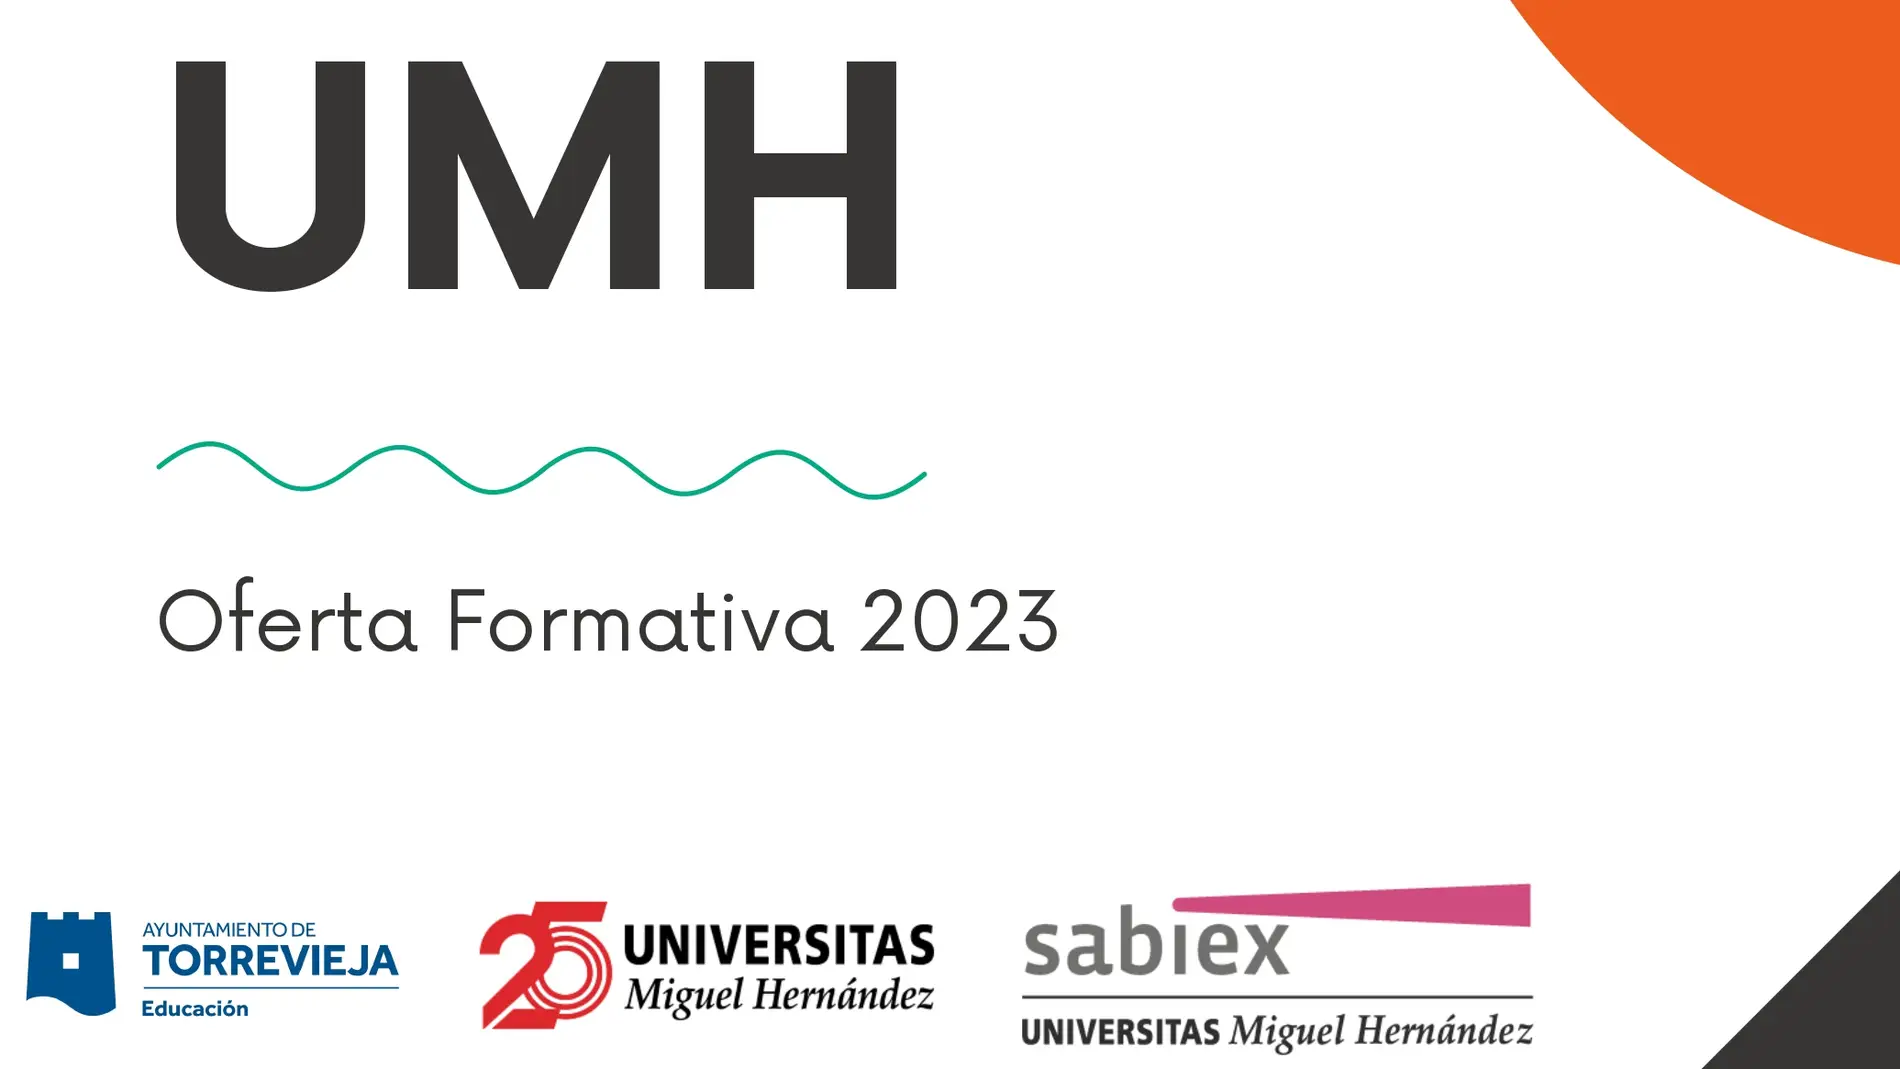 Oferta de cursos formativos online de la universidad Miguel Hernández en Torrevieja 